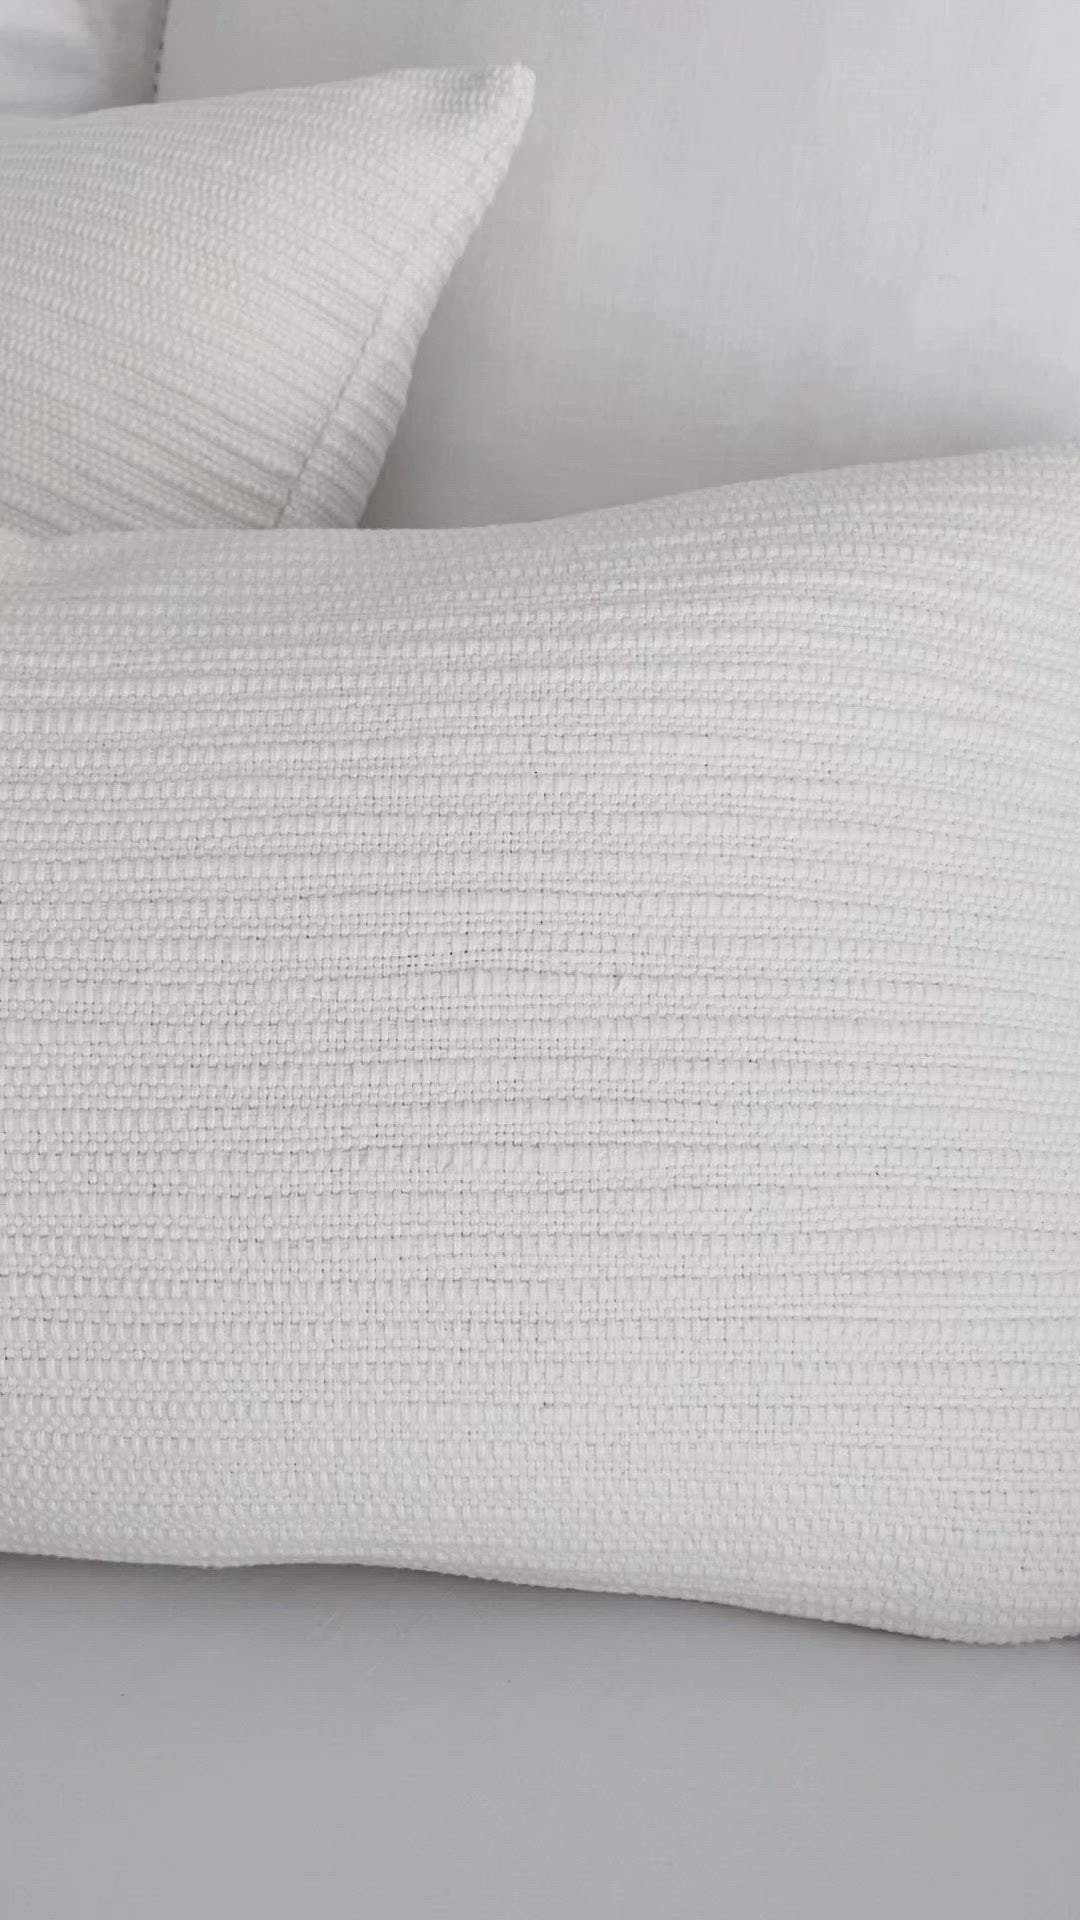 Zak + Fox Jibari Textured White Luxury Designer Throw Pillow Cover Product Video